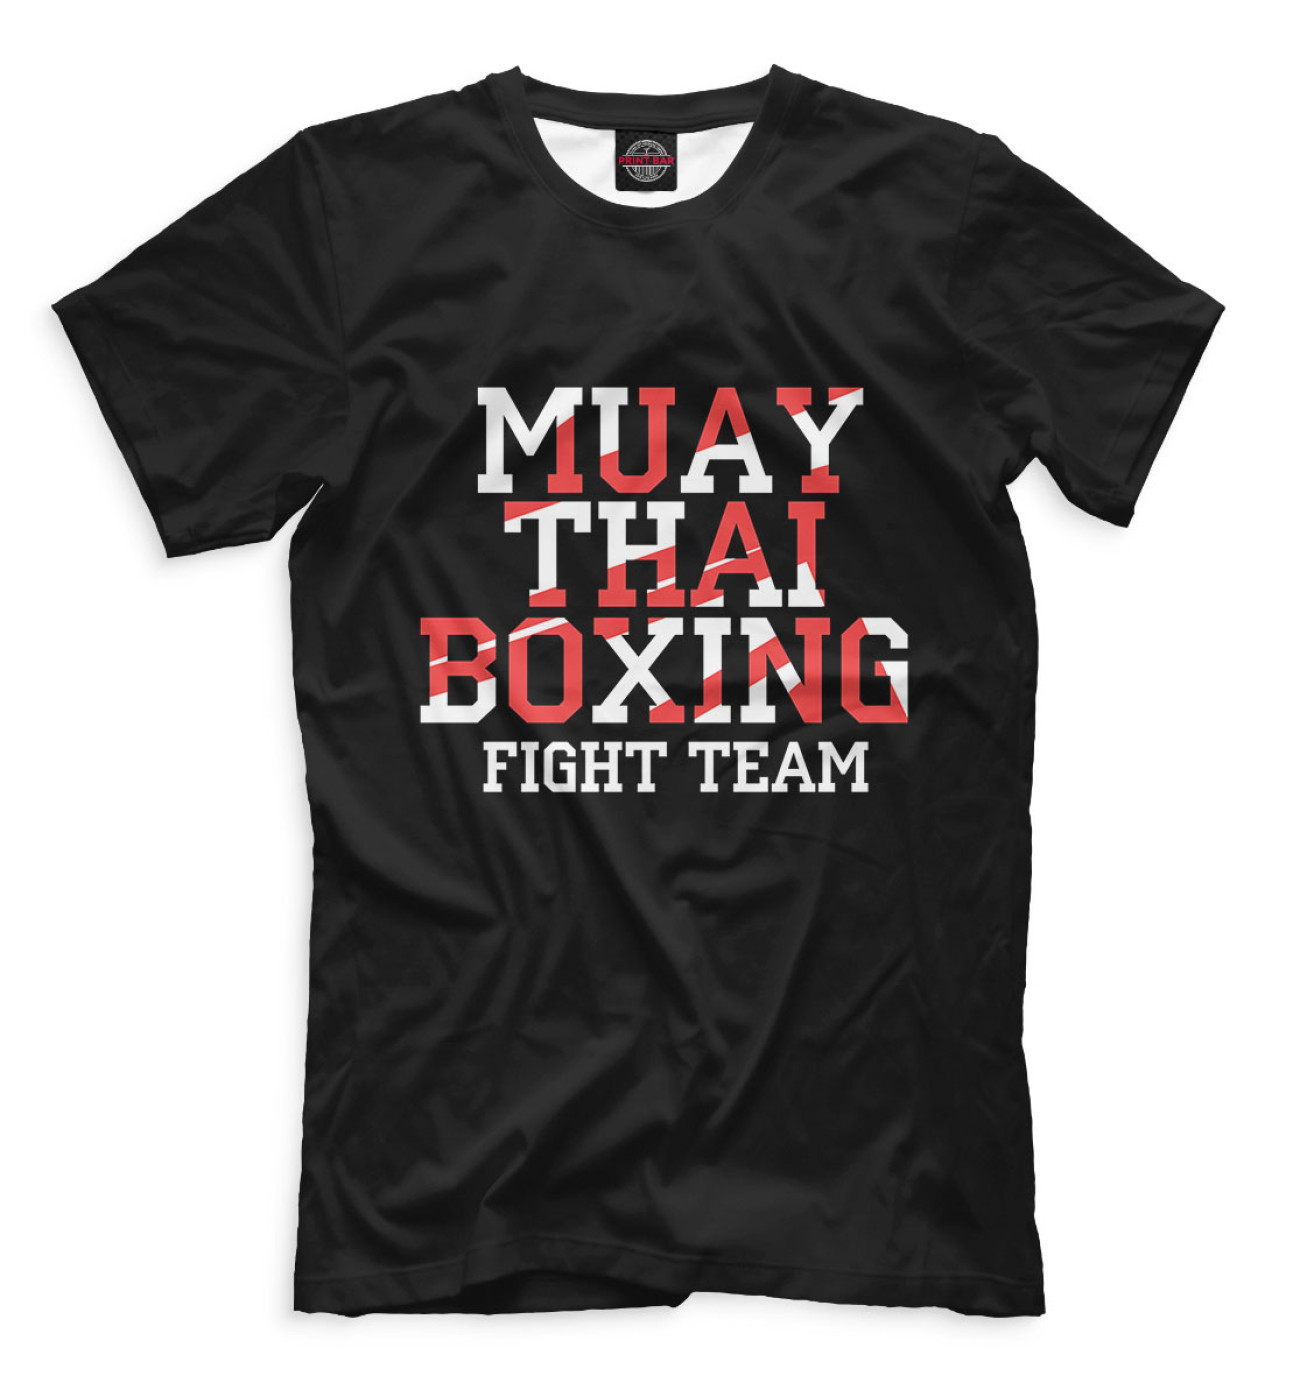 Мужская Футболка Muay Thai Boxing, артикул: EDI-540894-fut-2